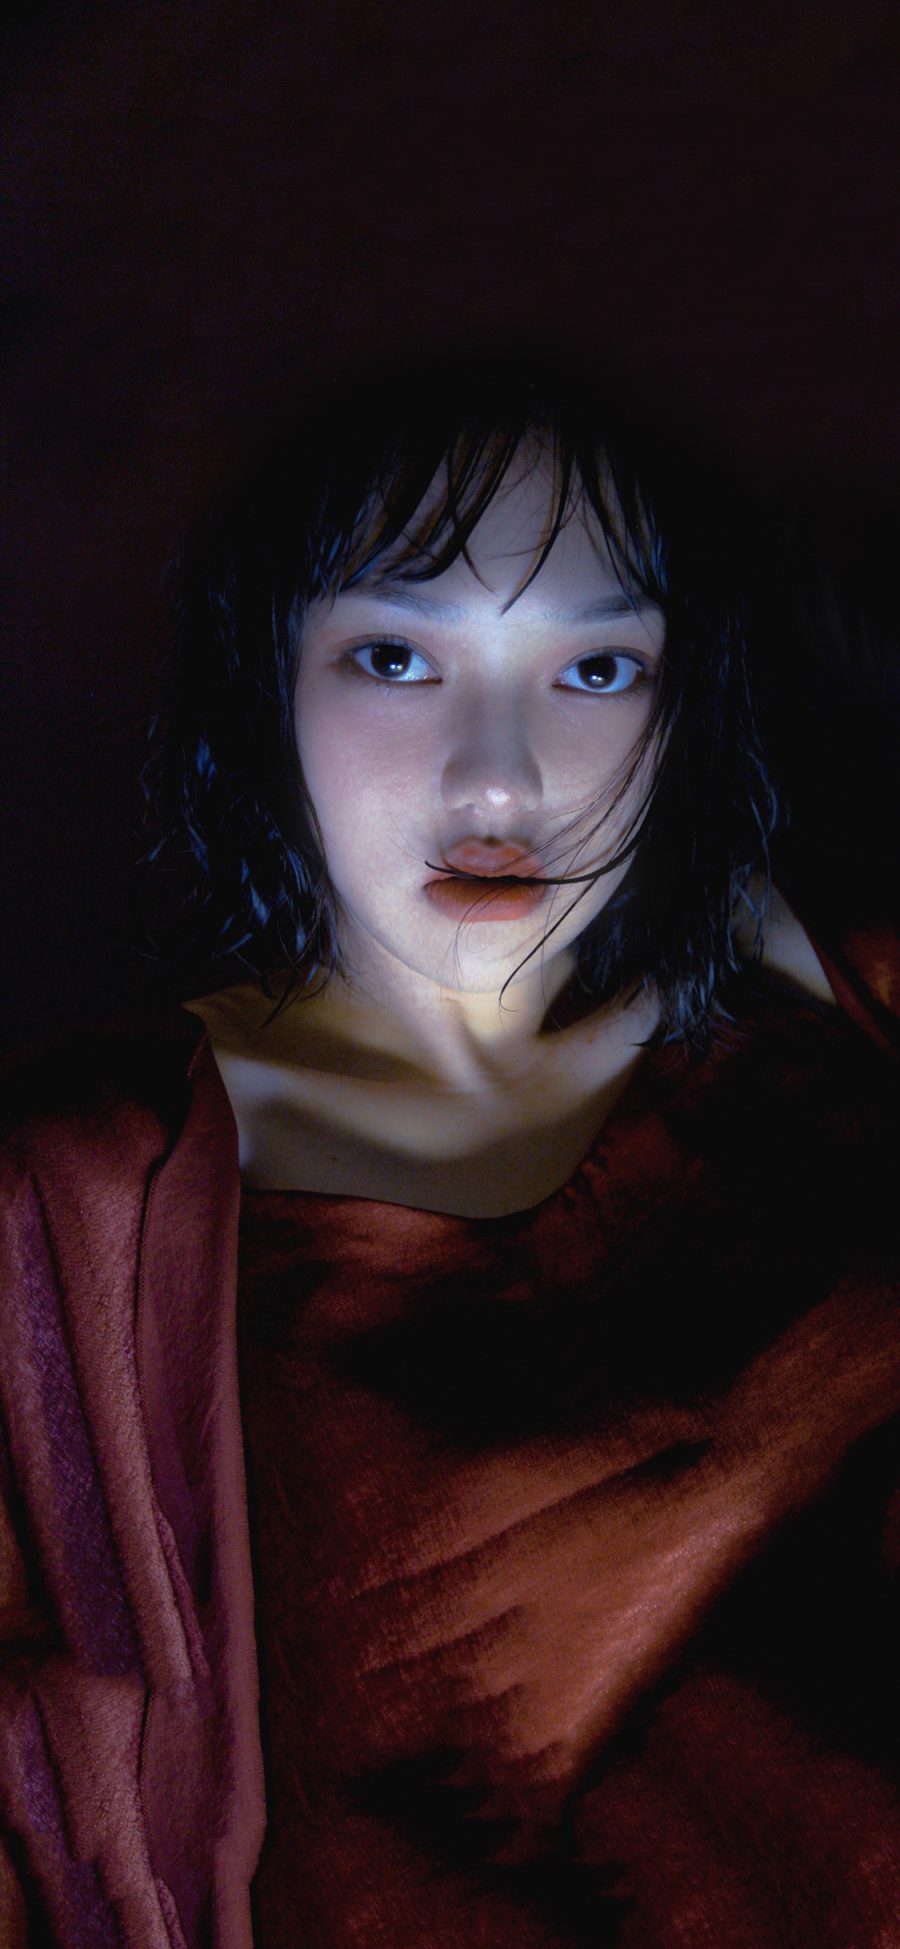 [2436×1125]日系写真 少女 湿发 妆容 苹果手机美女壁纸图片